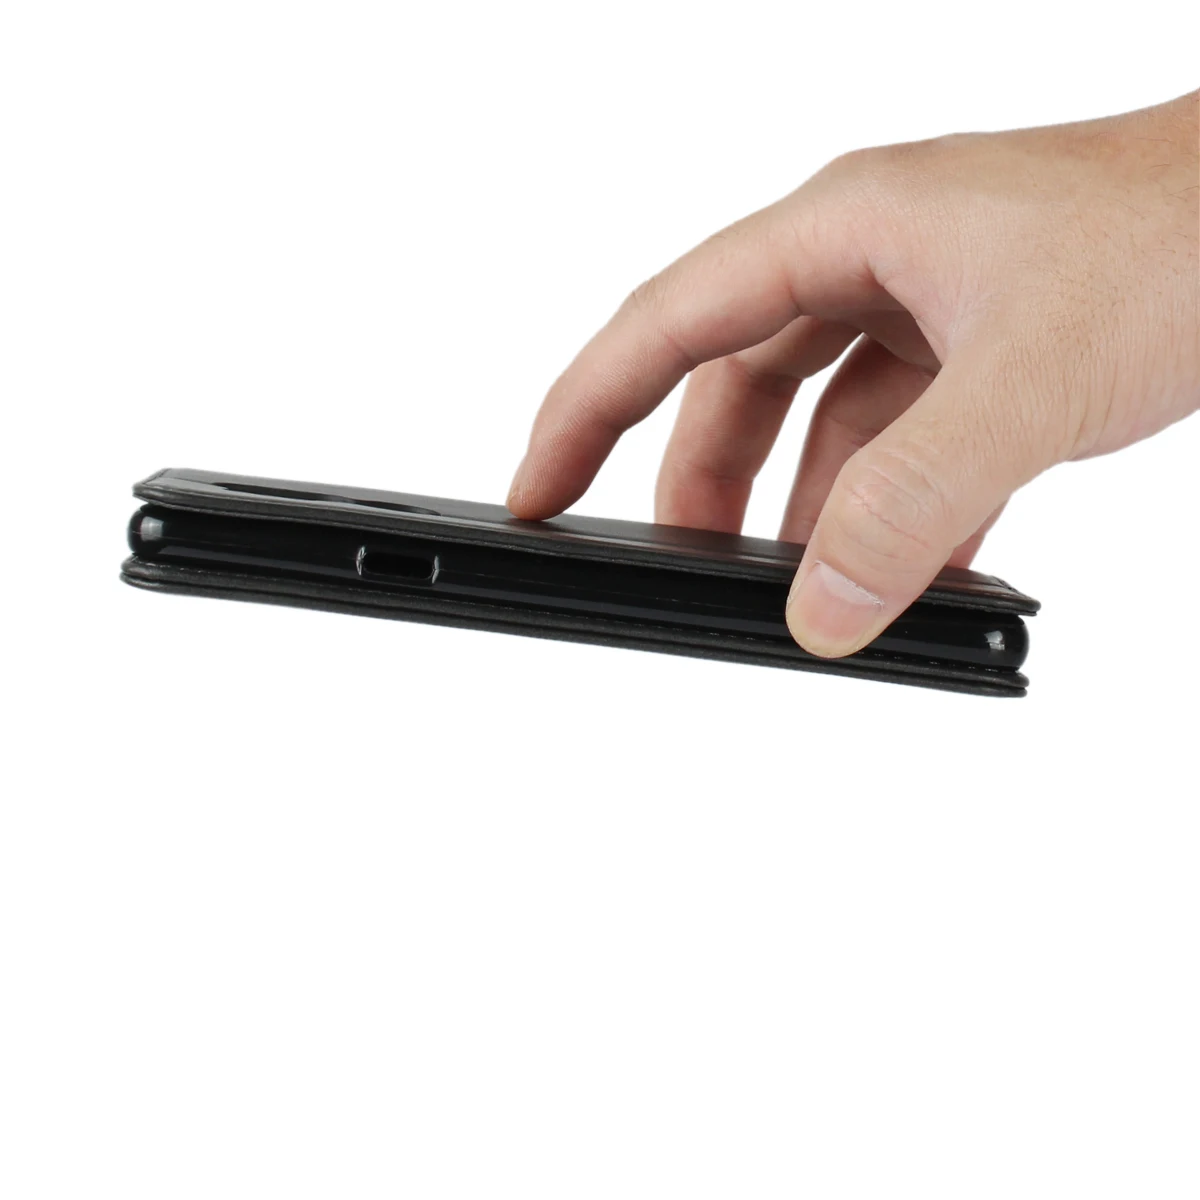 Магнитный кожаный флип-чехол s для sony Xperia XA2 ultra XA1 ультра компактный чехол-кошелек аксессуар для мобильного телефона Слот для Карт Подставка